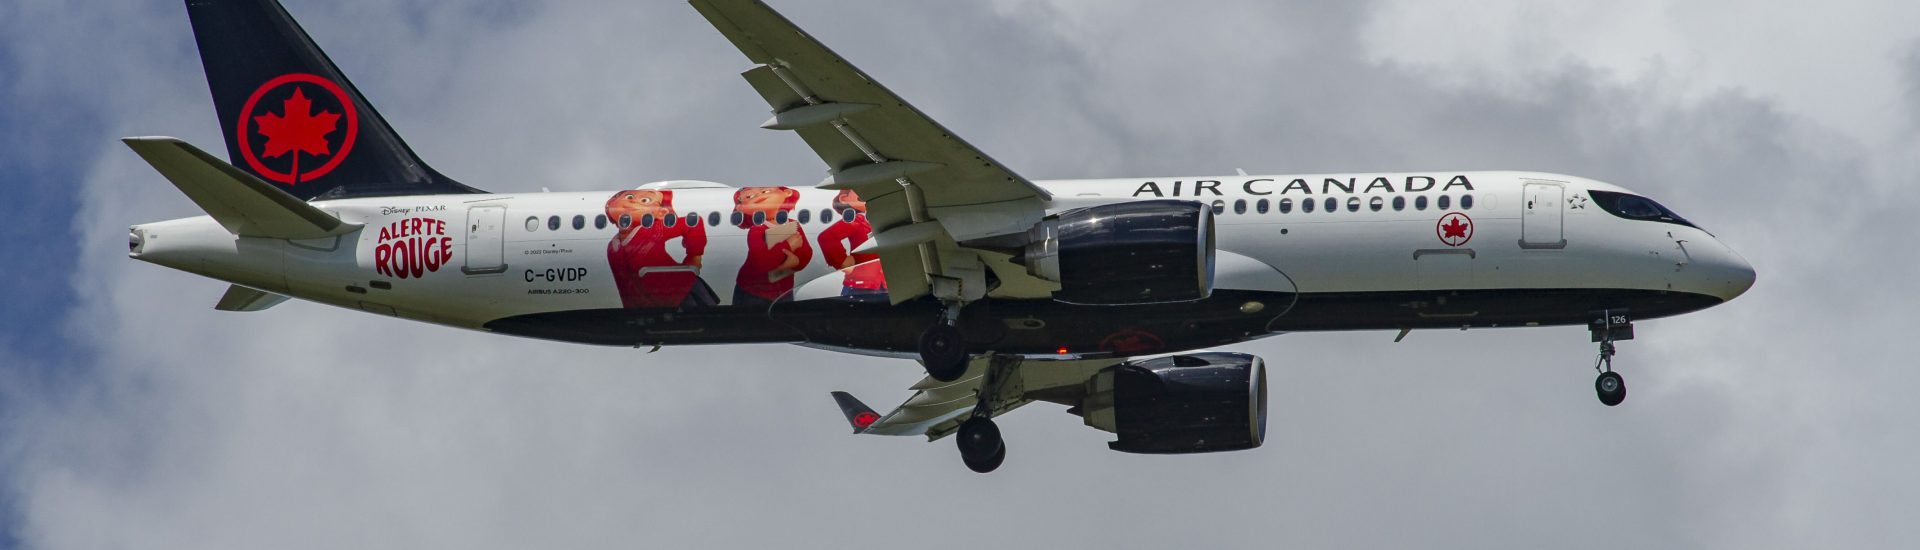 A220-300 Air Canada C-GVDP